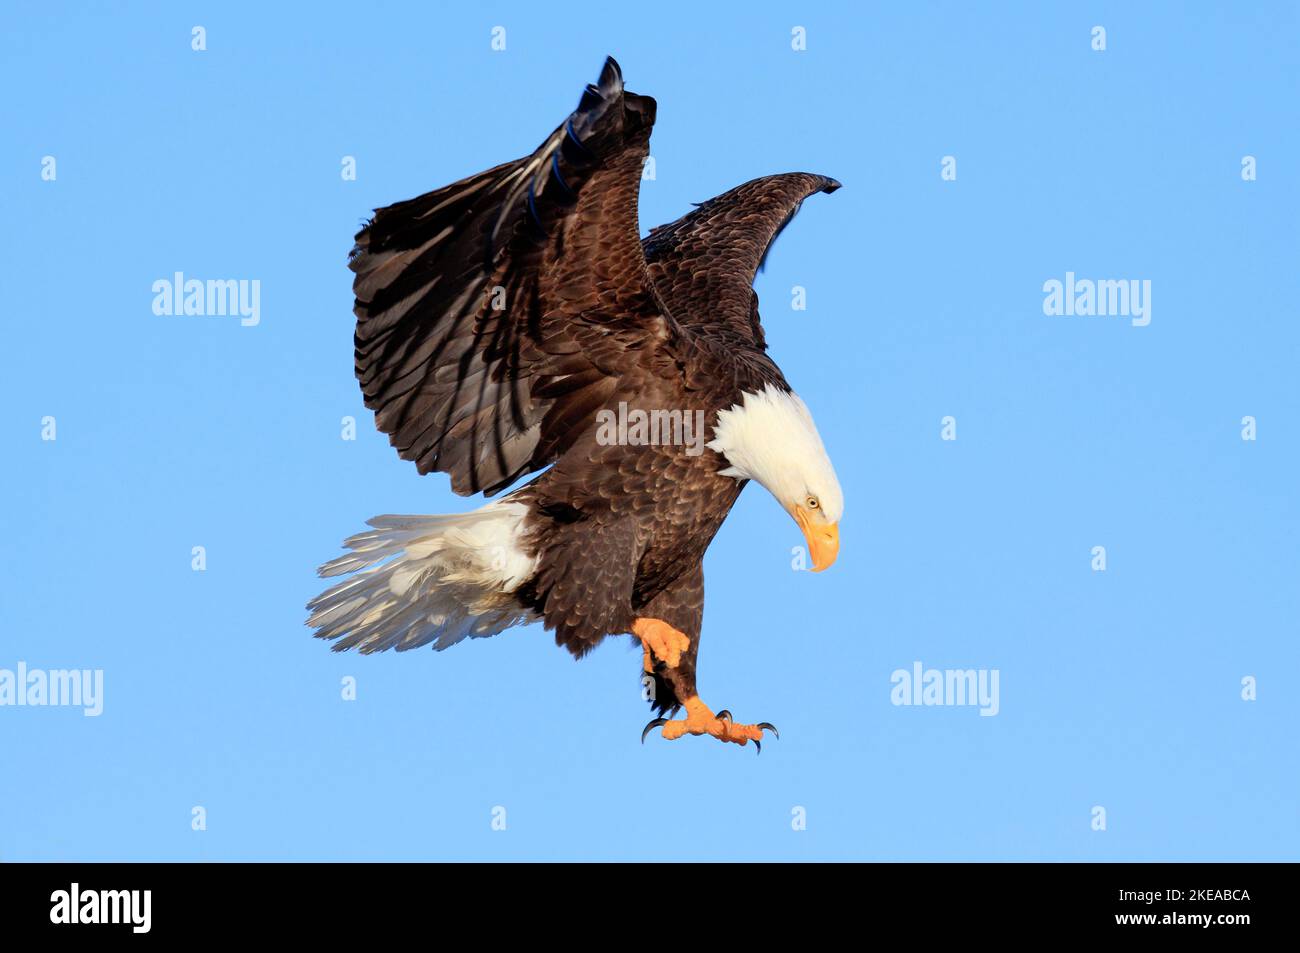 Weisskopfseeadler Portrait, USA Stock Photo